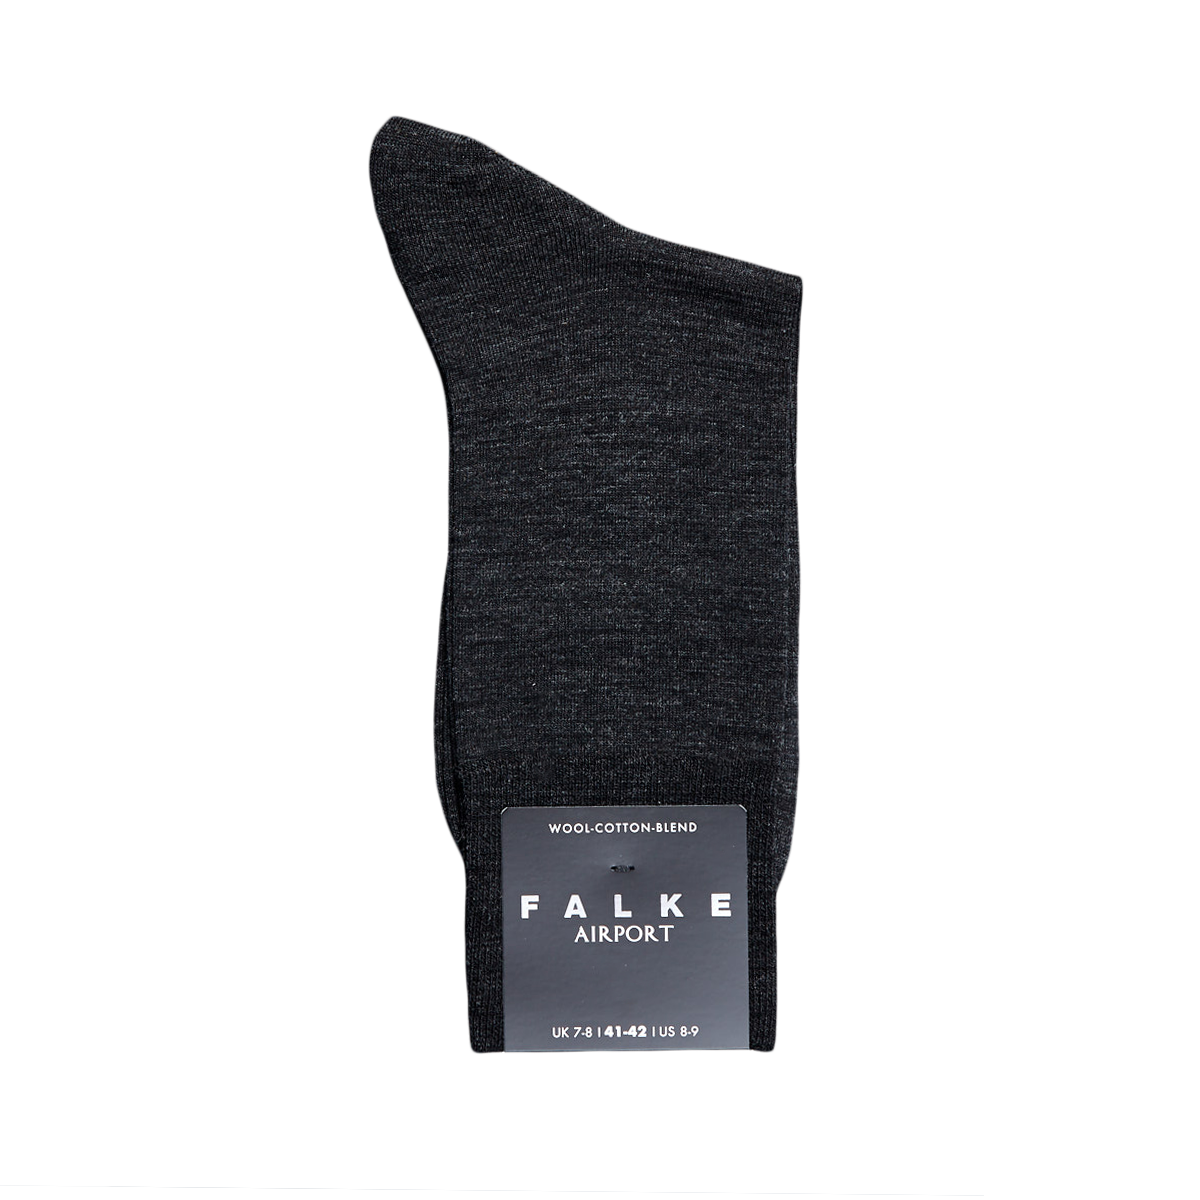 FALKE Mens Airport Socks Merino Wool Cotton Black Grey More Colors 1 Pair